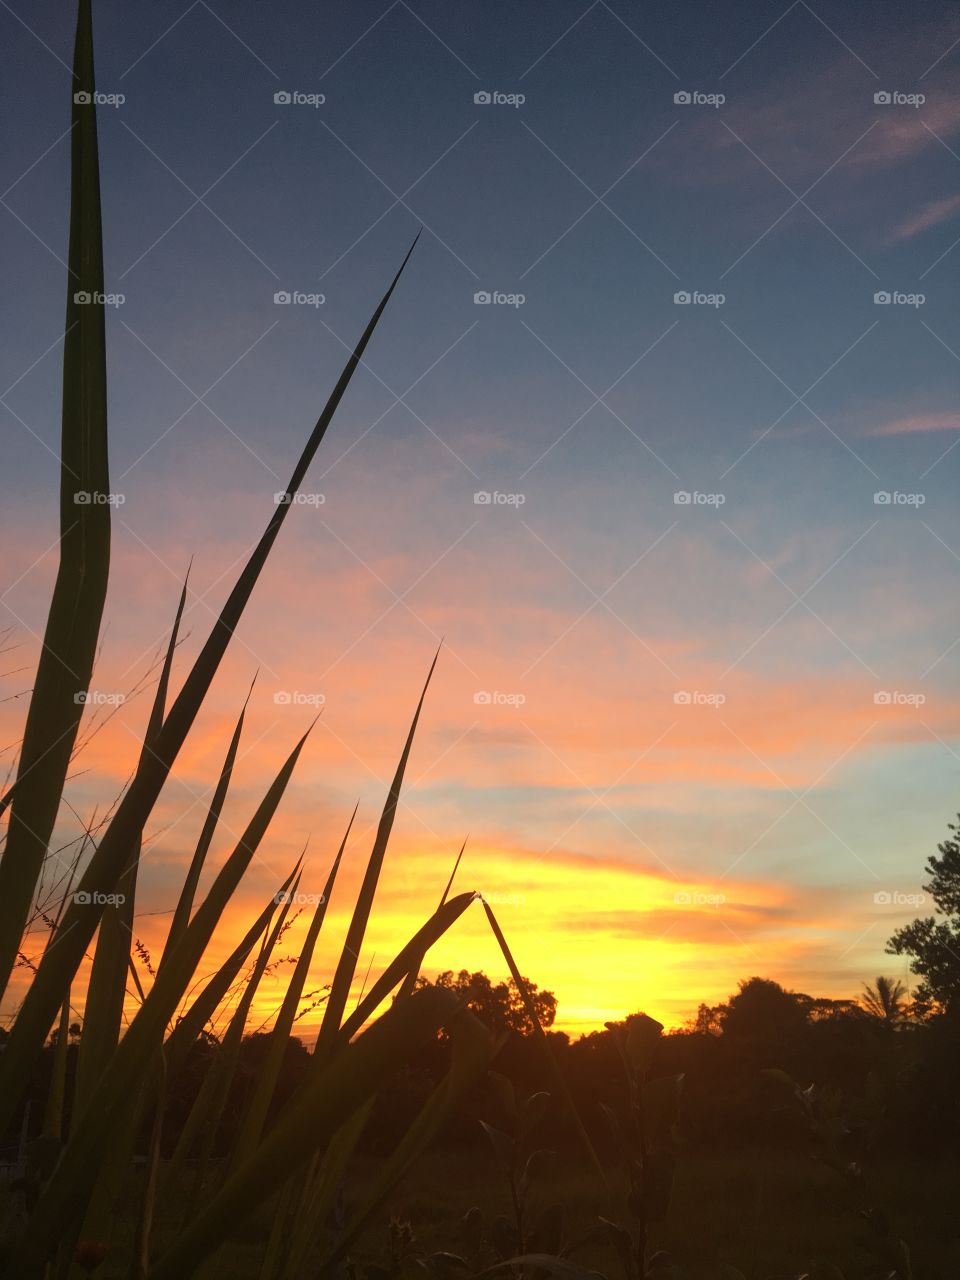 Desperta, #Jundiaí!
Ótima 4a à todos. Nosso incrível amanhecer na terra da uva. 
🌅
#sol
#sun
#sky
#céu
#nature
#nofilter #morning
#alvorada
#natureza
#horizonte
#fotografia
#paisagem
#amanhecer
#mobgraphia
#FotografeiEmJundiaí
#brazil_mobile